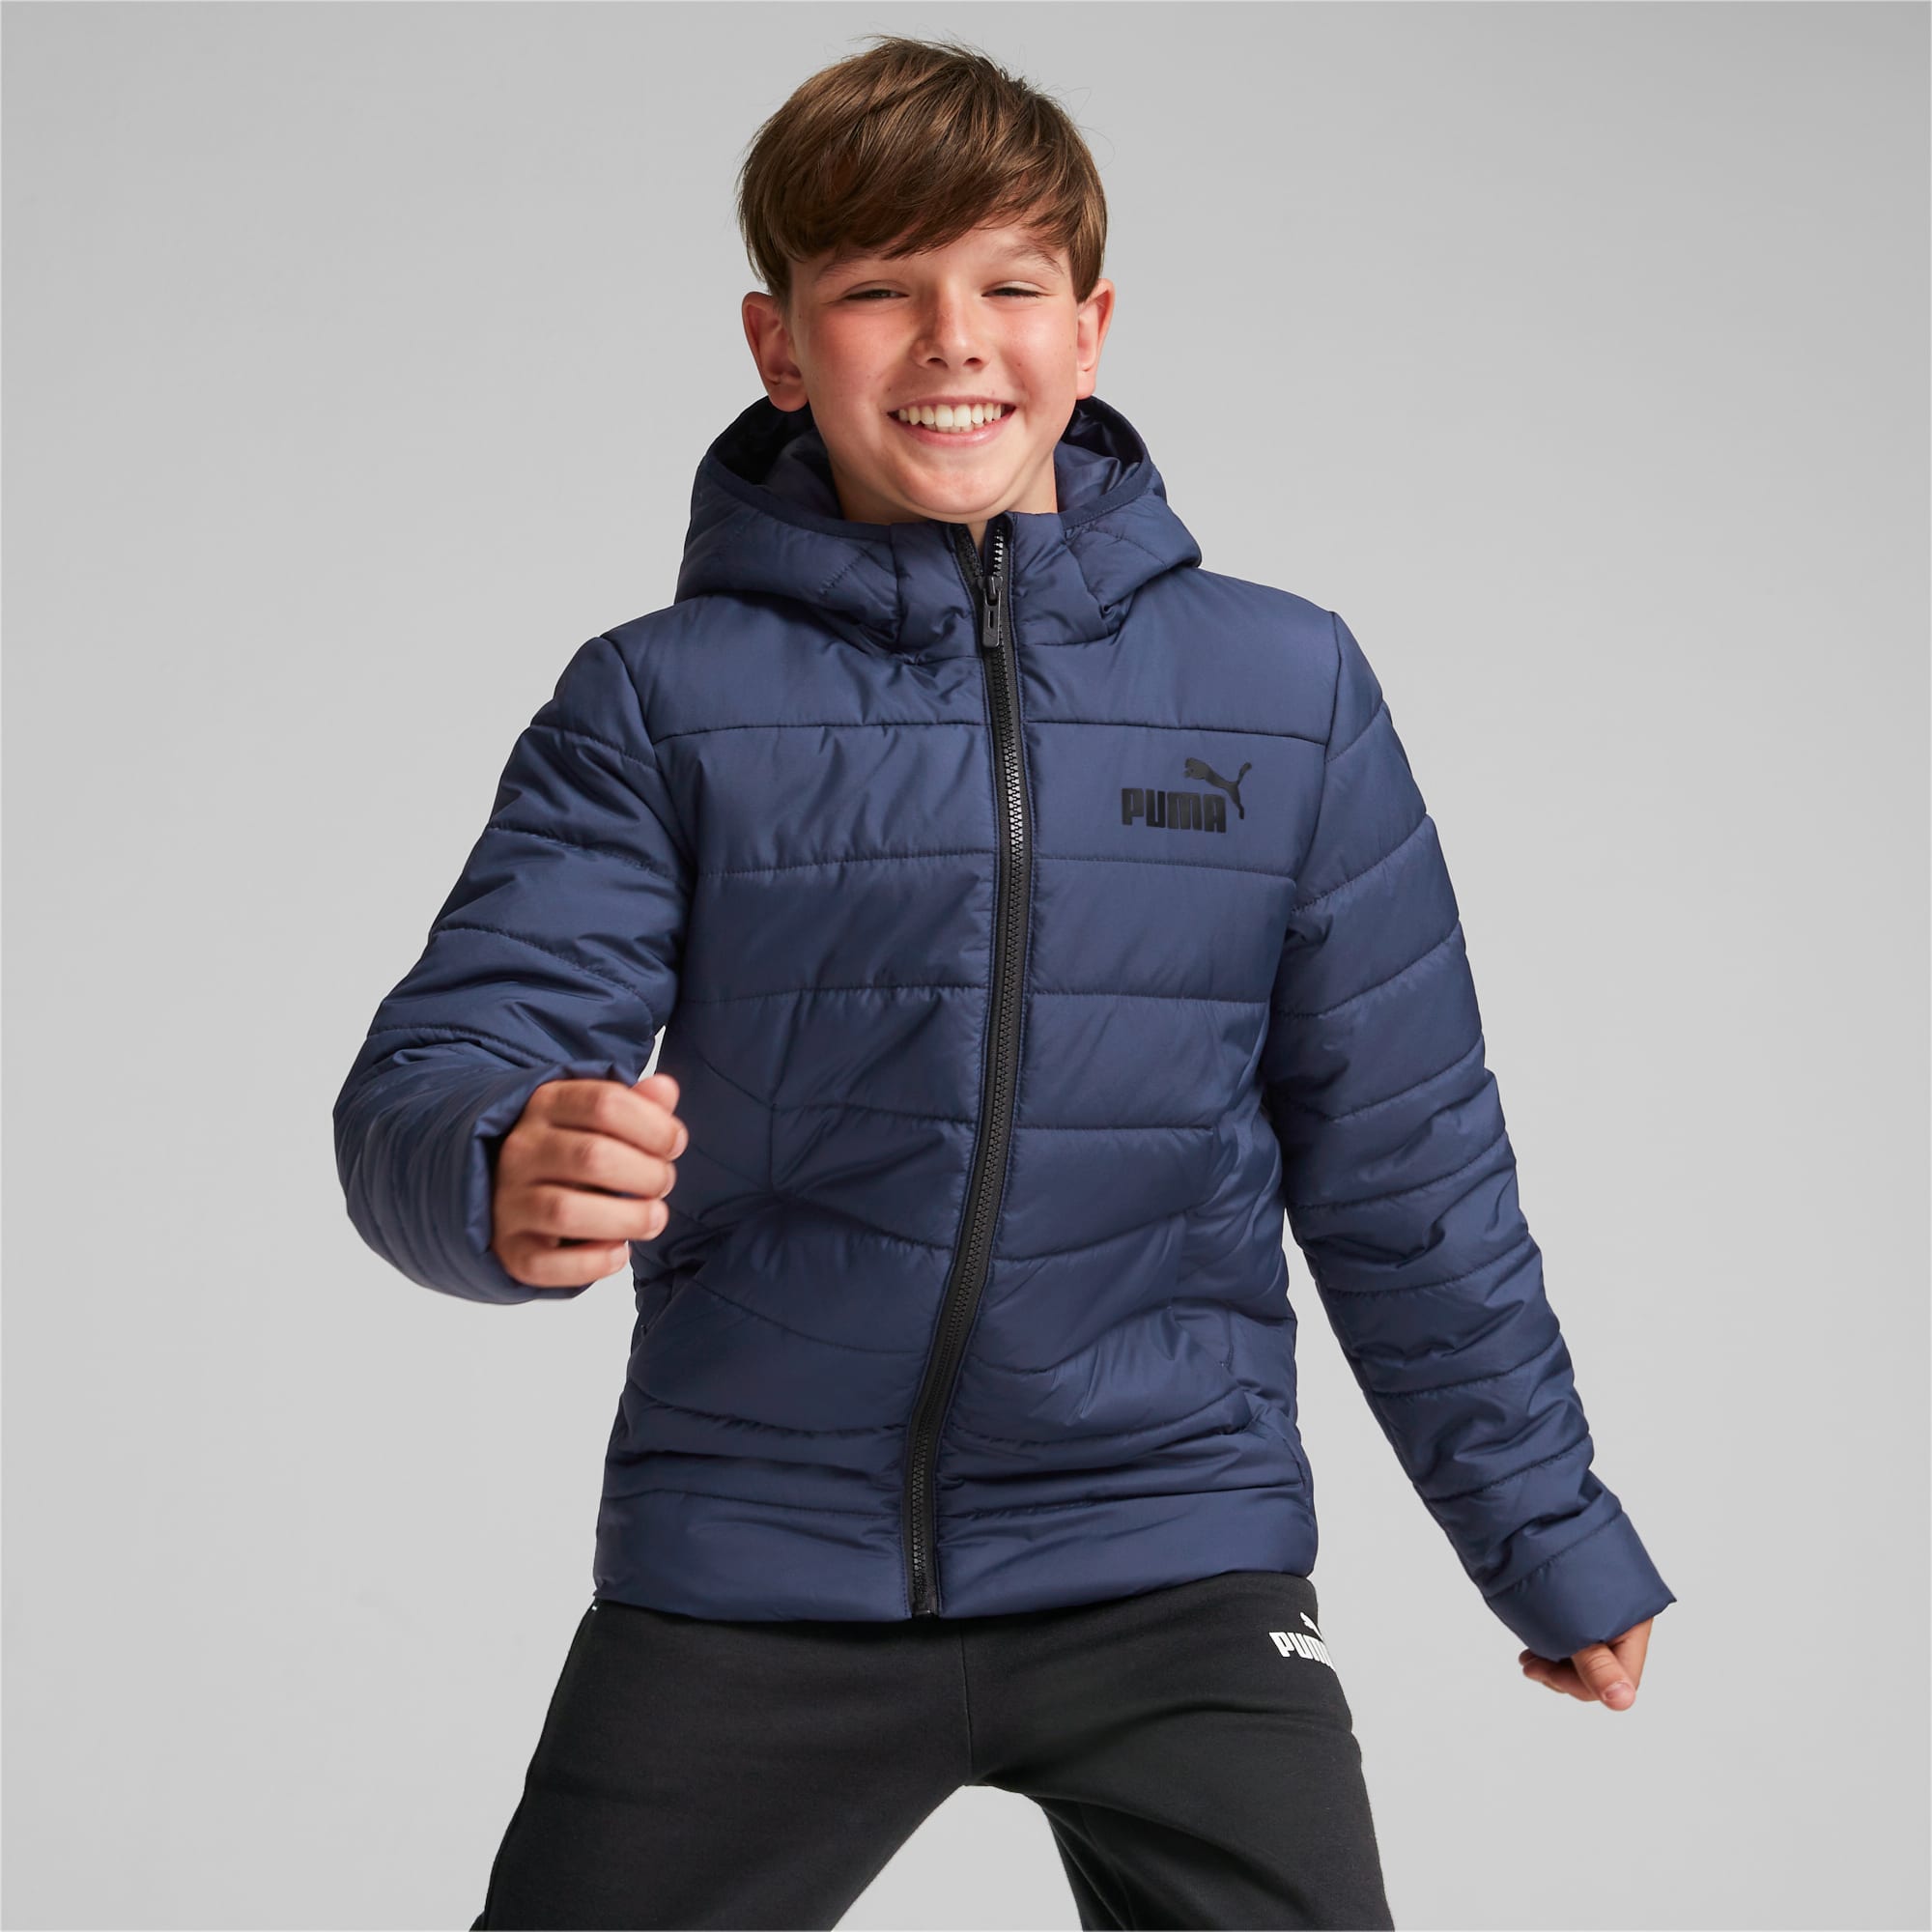 PUMA Essentials Jacke Jugend Für Kinder, Blau, Größe: 110, Kleidung